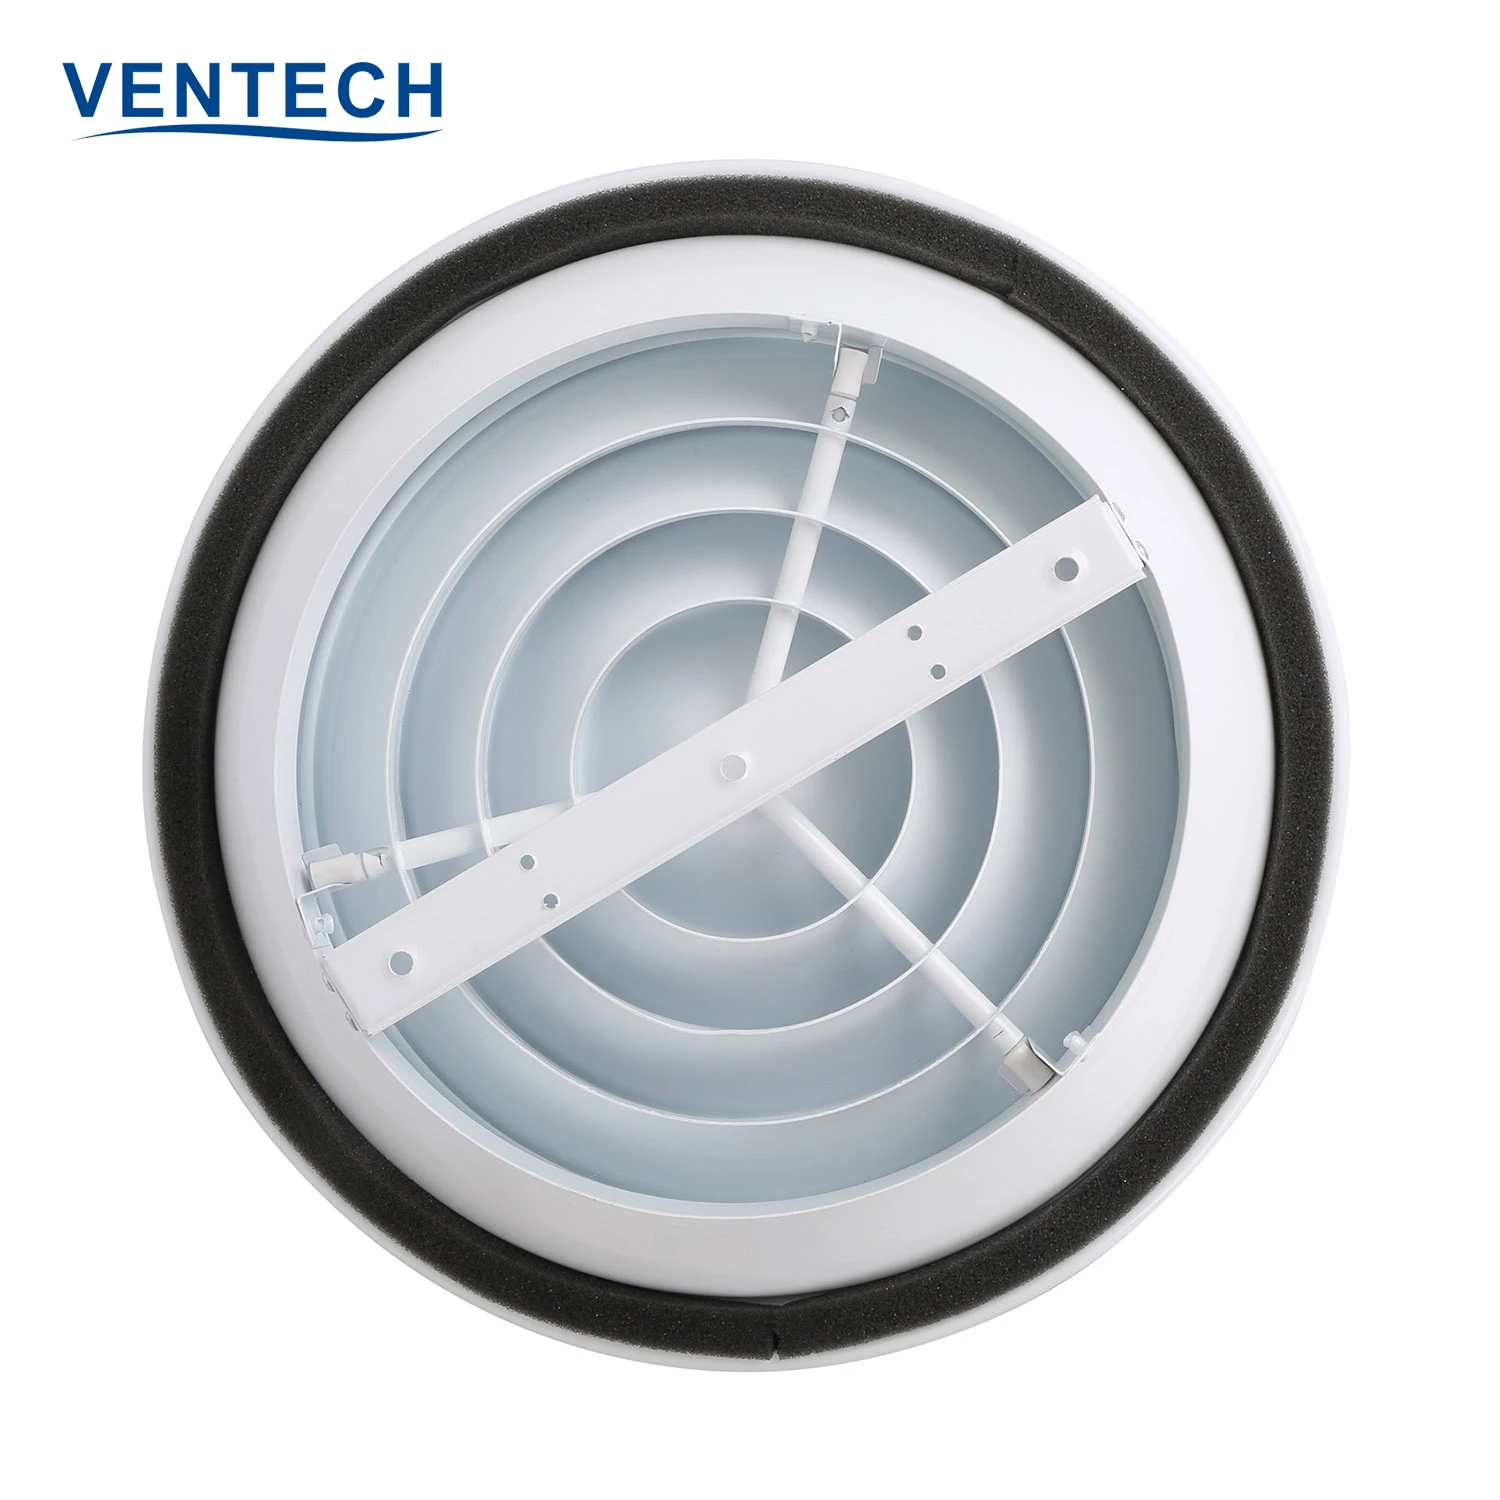 Hvac Ceiling Clip Air Conditioner Round Diffuser